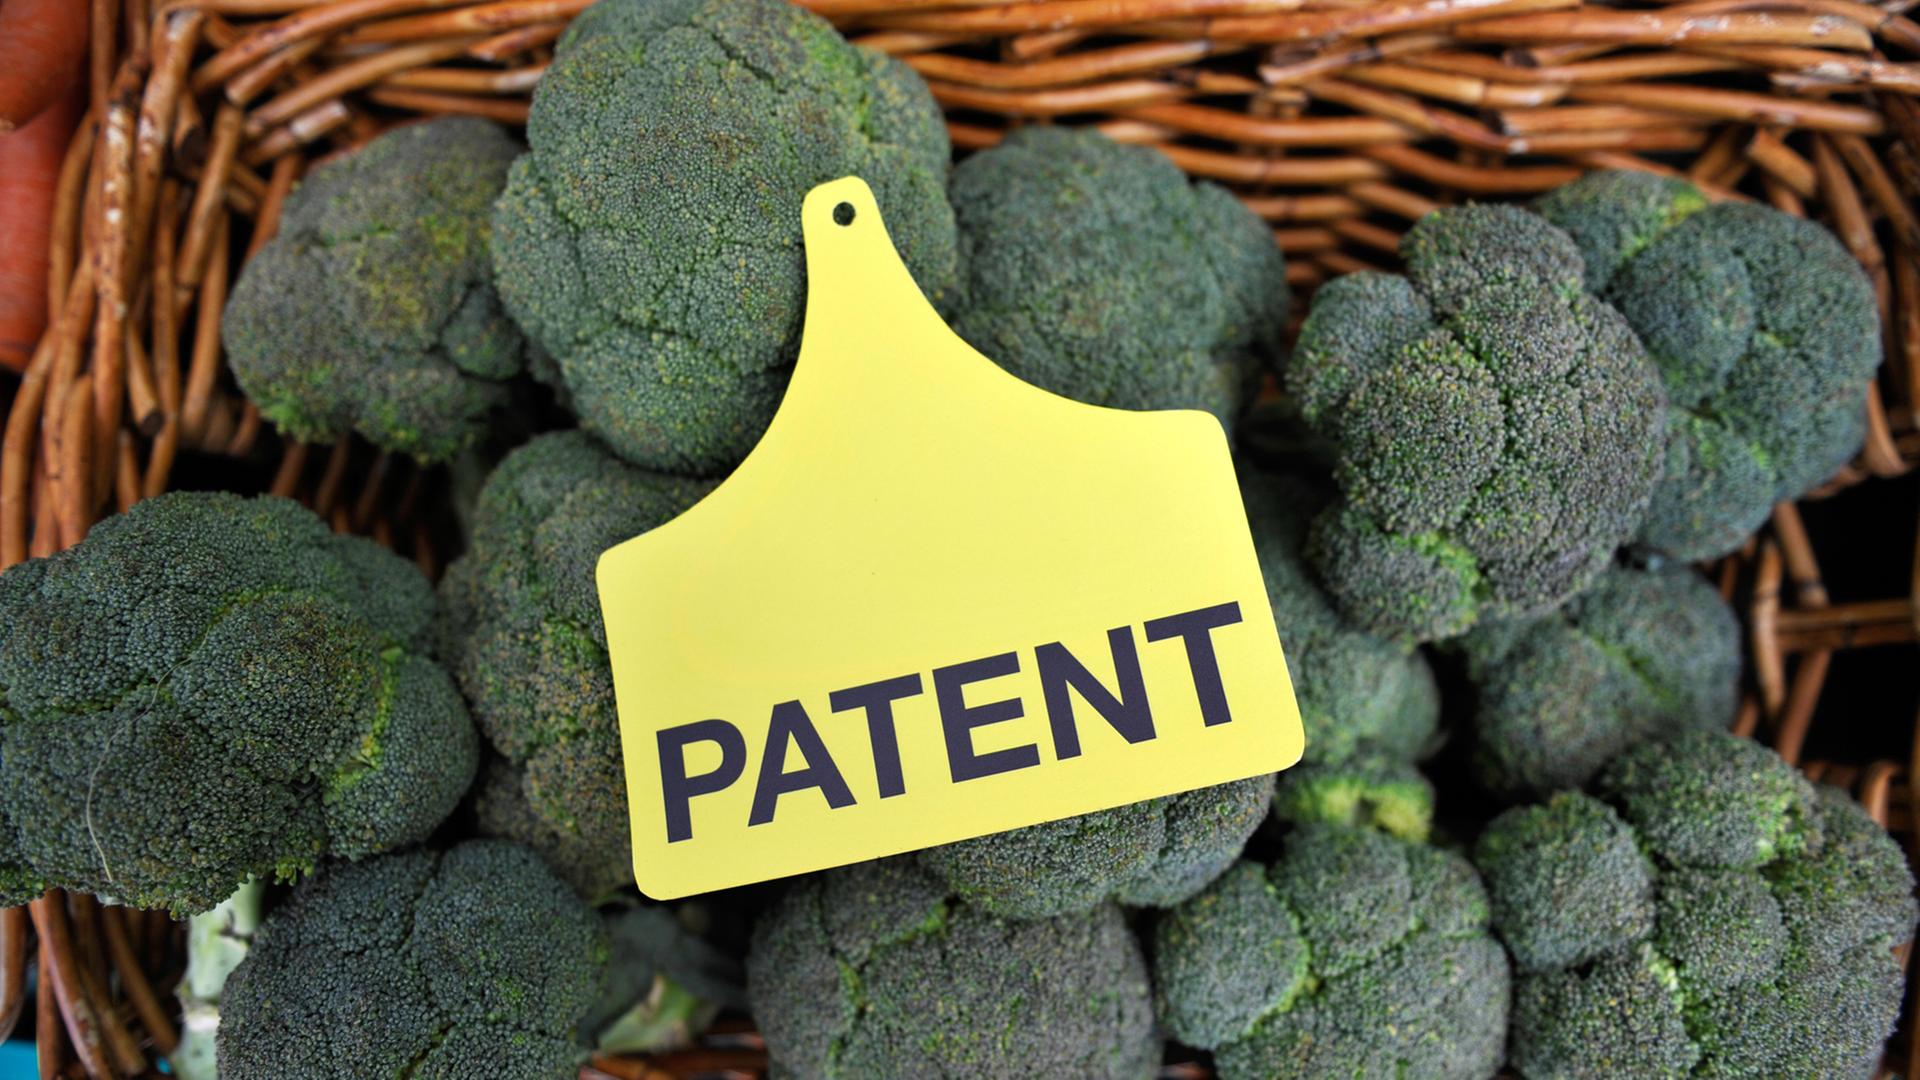 Ein Schild mit der Aufschrift "Patent" liegt auf mehreren Brokkoli vor dem Europäischen Patentamt in München, aufgenommen 2010.